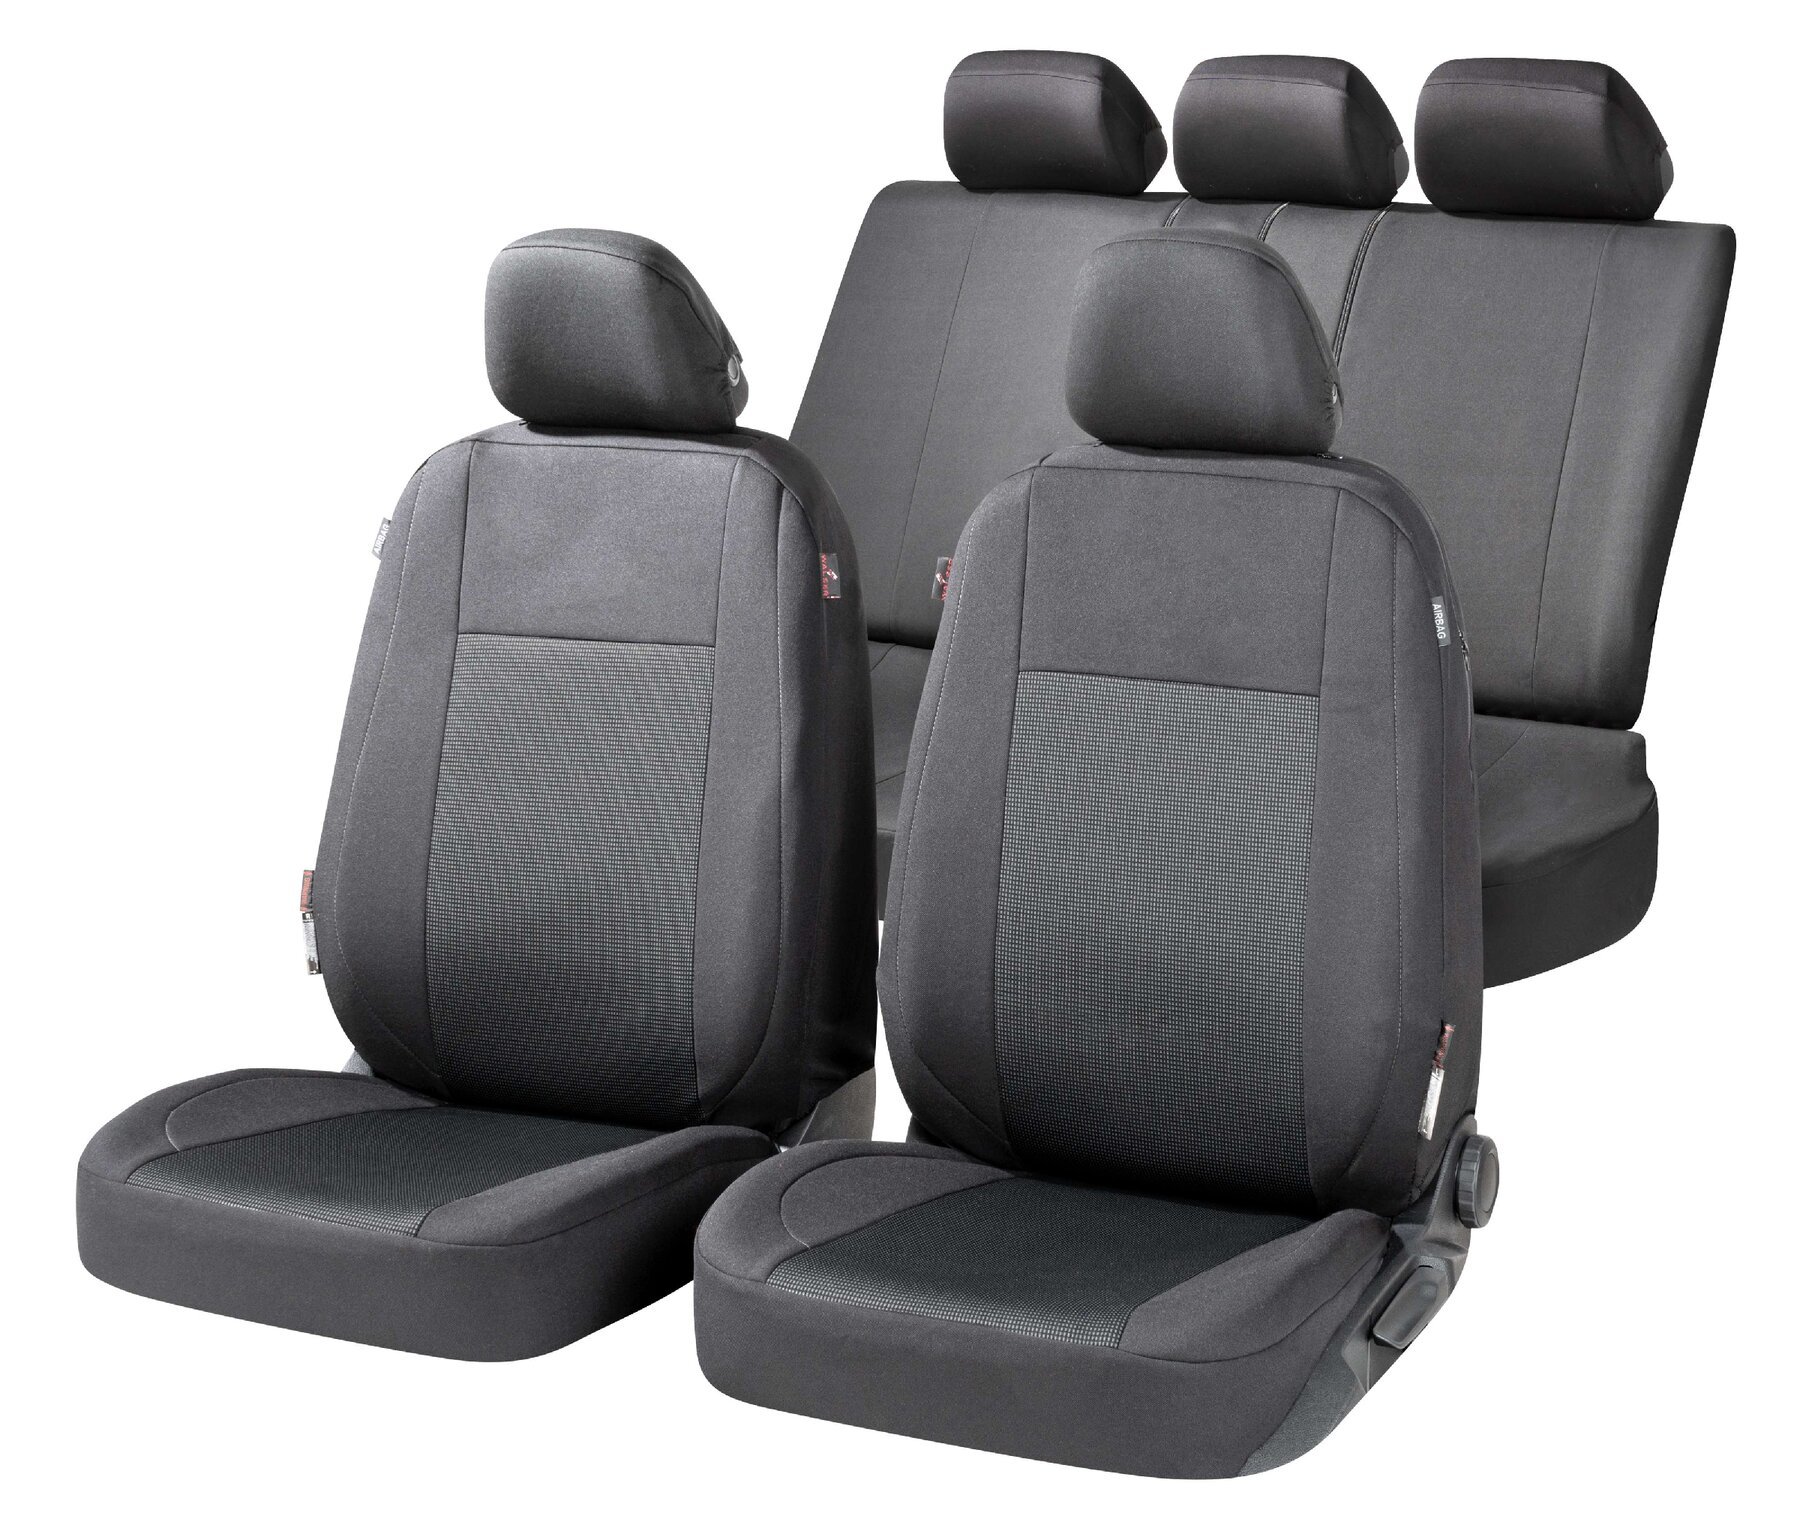 ZIPP IT Premium Housse de sièges Ardwell complet avec système de fermeture éclair noir/gris